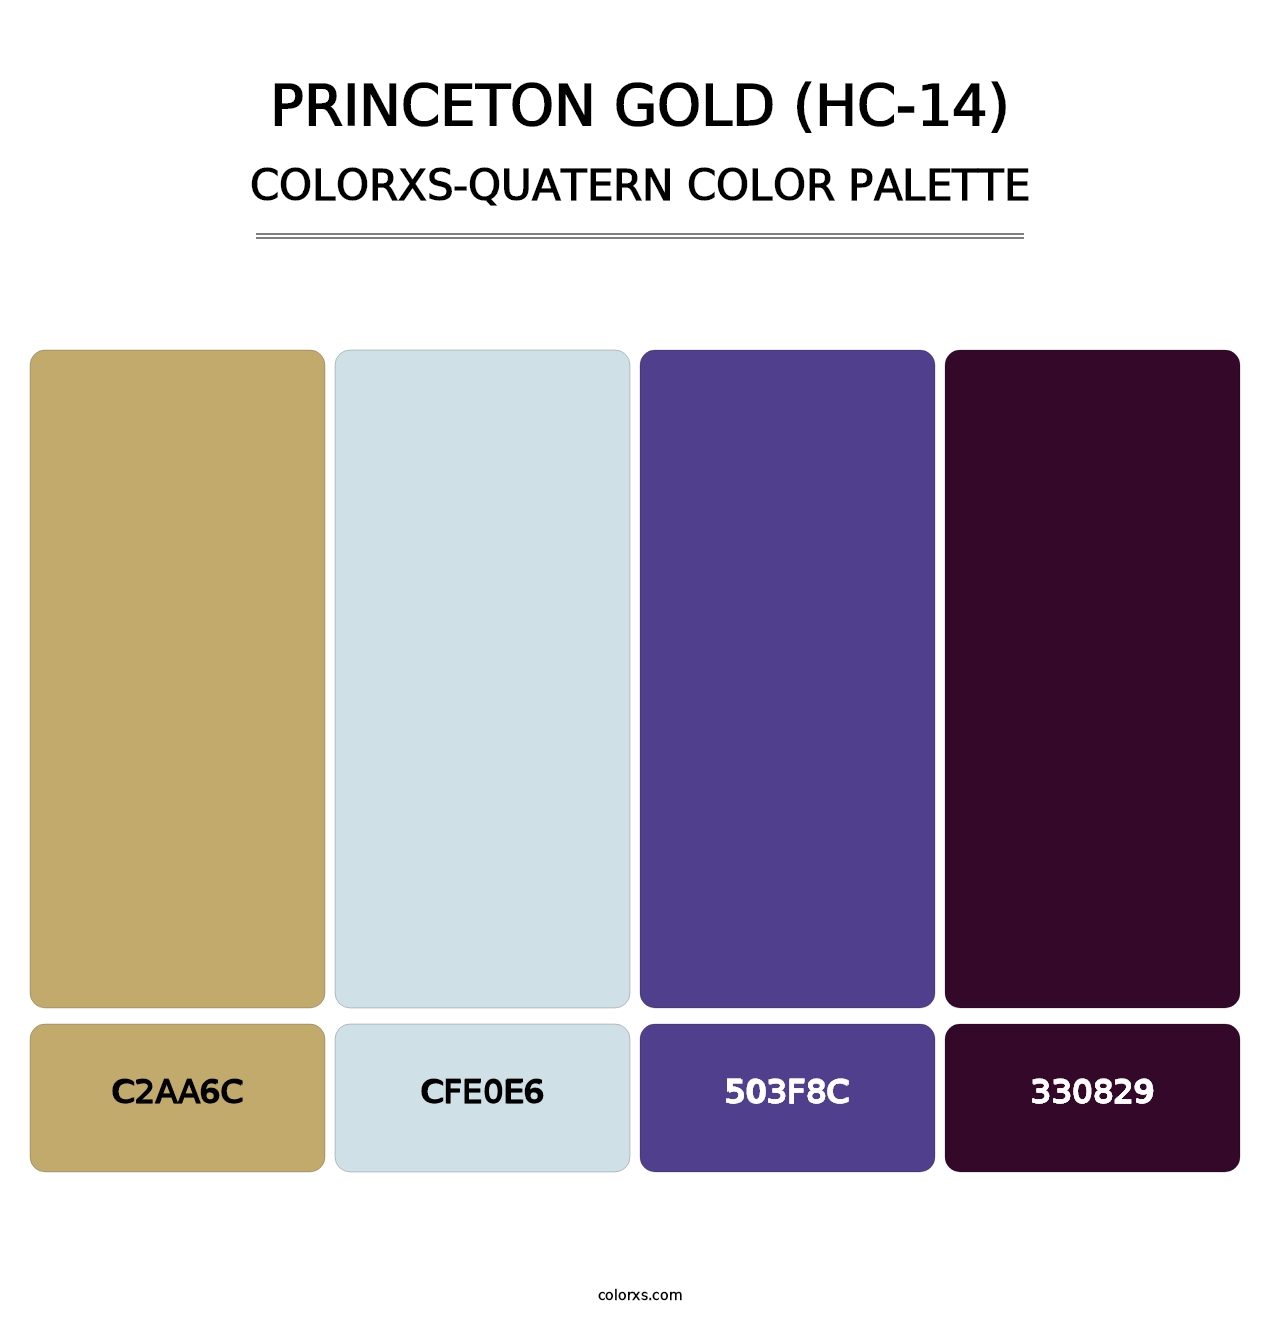 Princeton Gold (HC-14) - Colorxs Quatern Palette